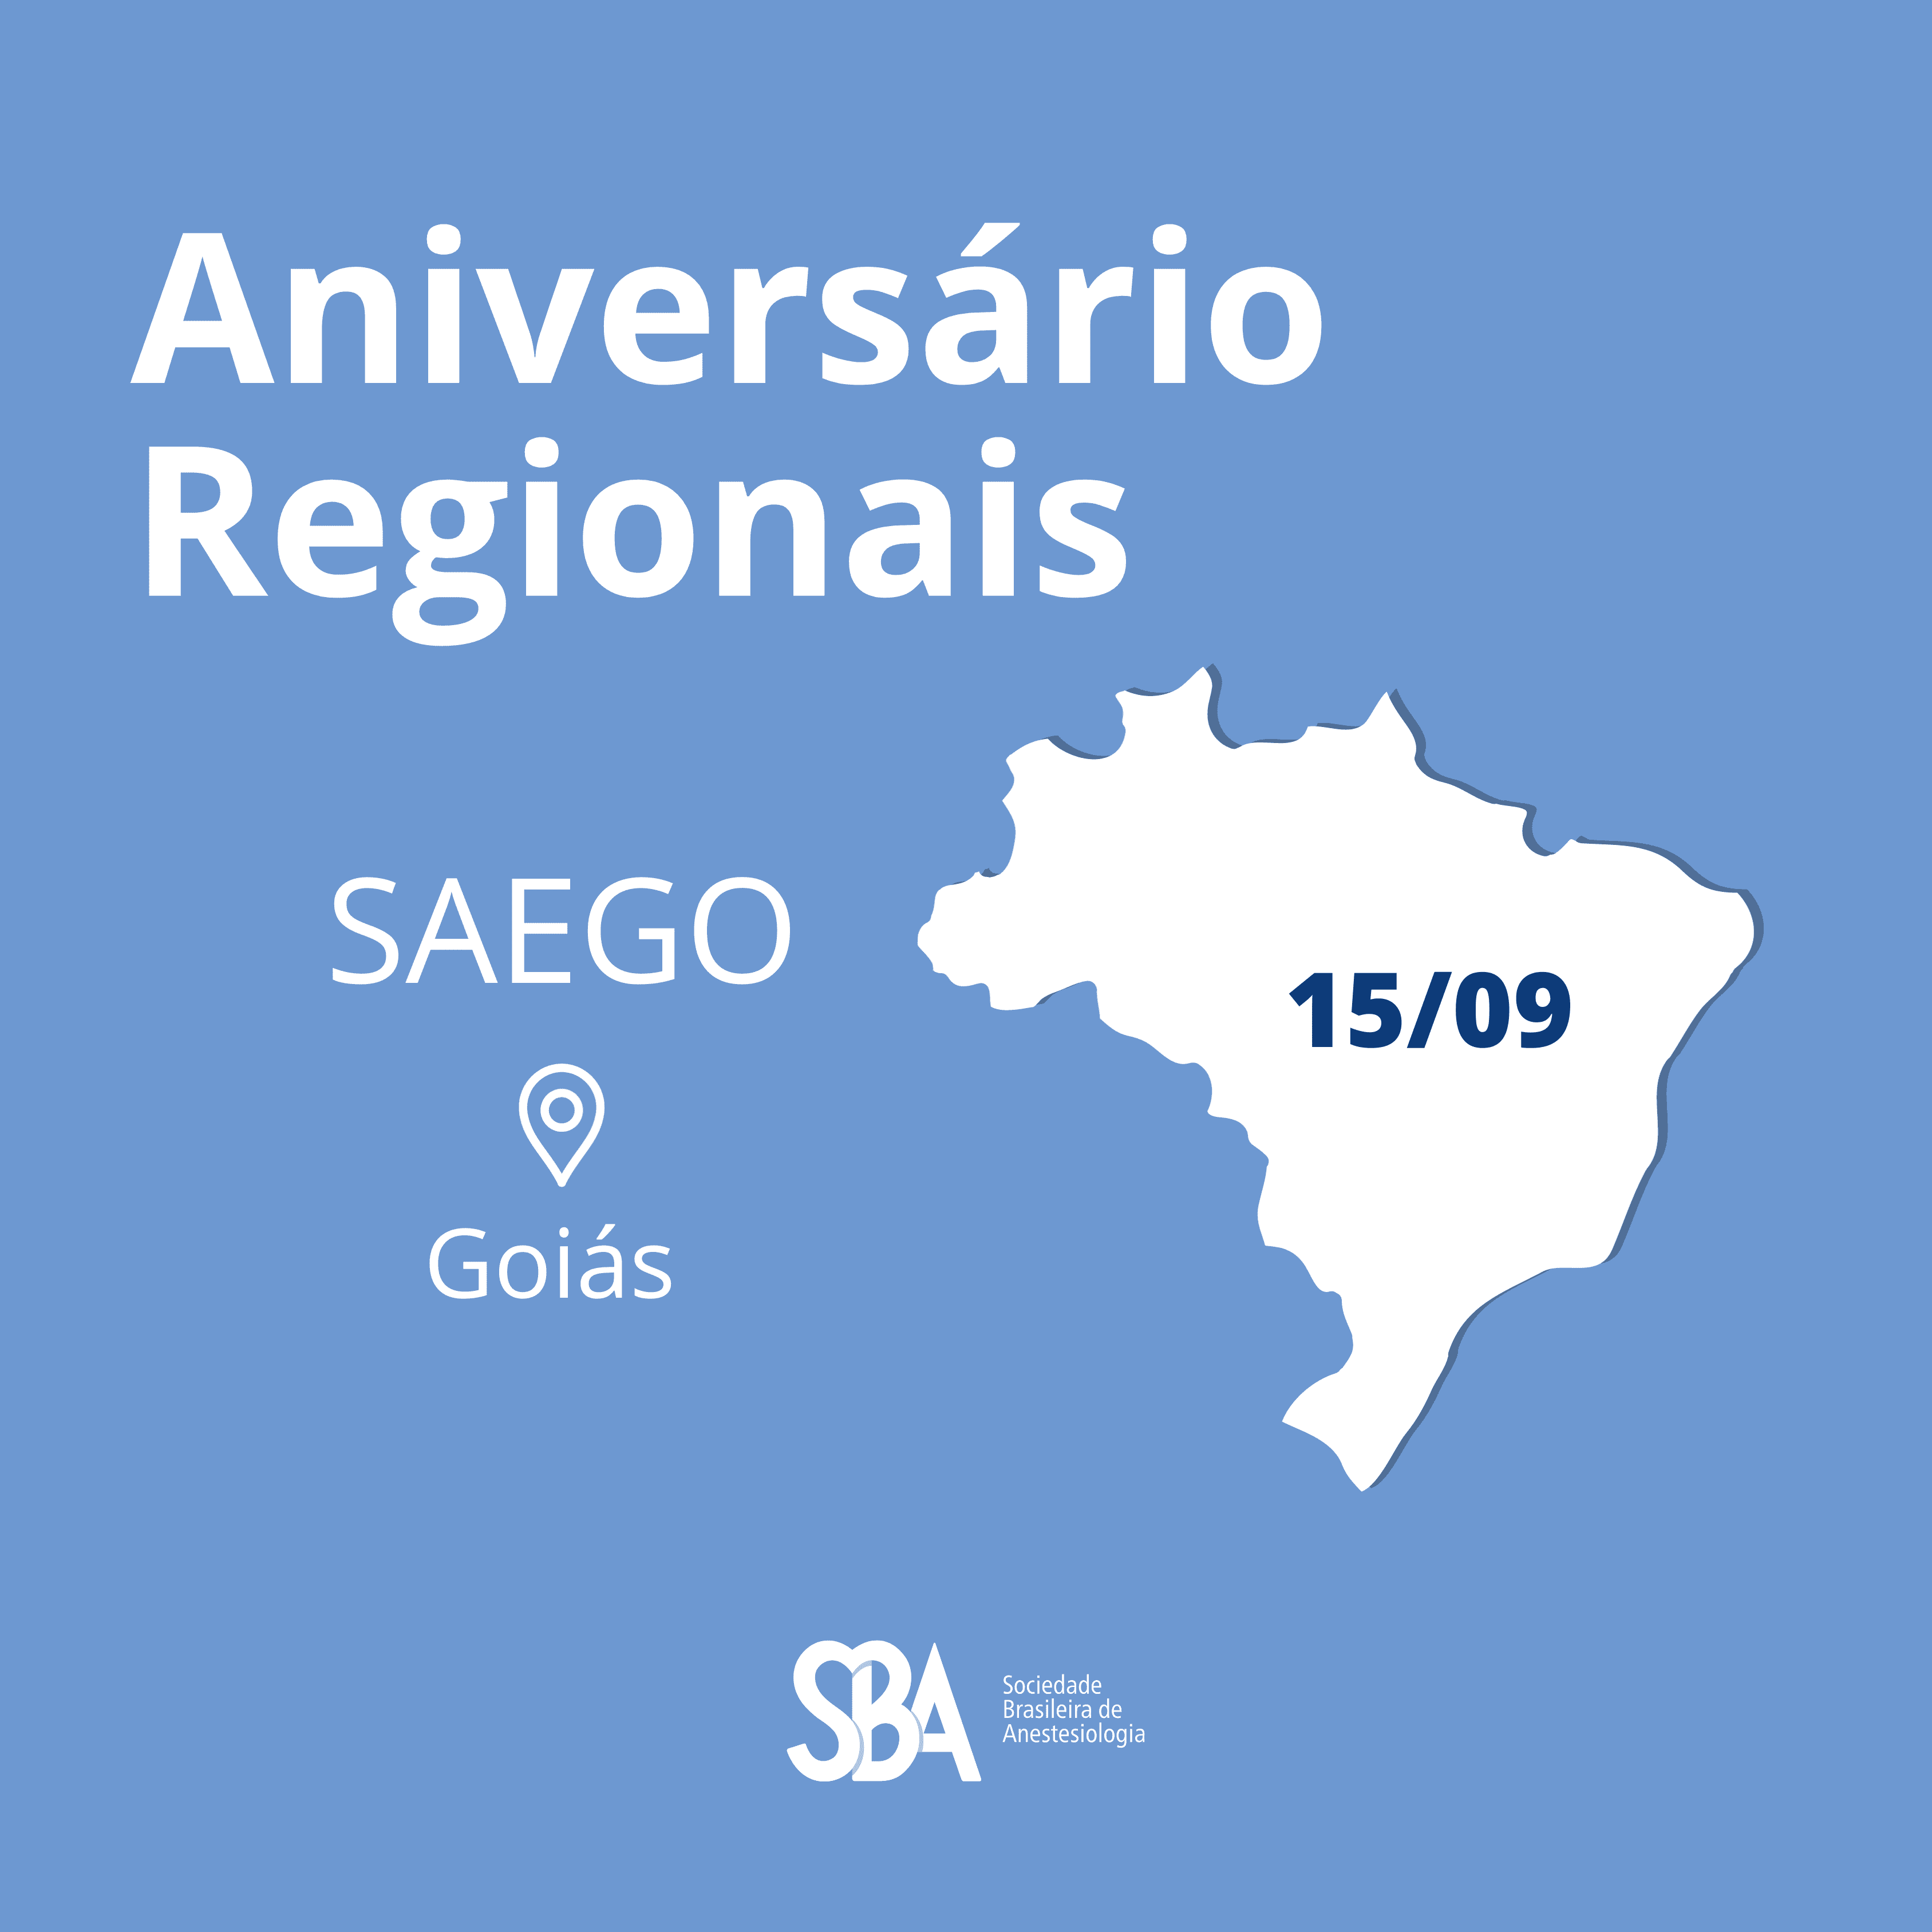 Aniversário Regional SAEGO